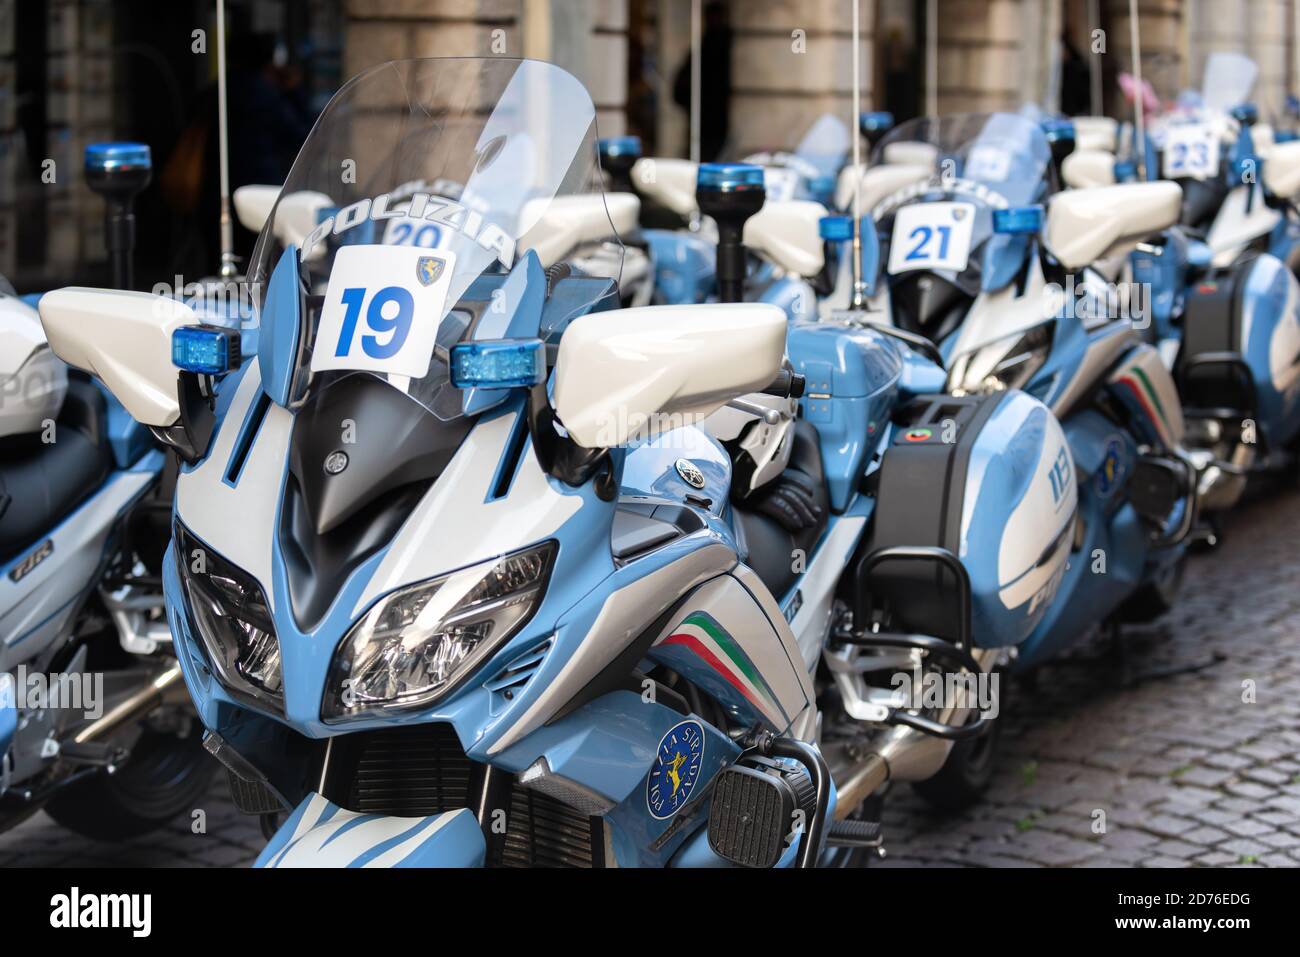 Motos de la policía italiana estacionadas en una calle adoquinada. Udine, Friuli Venecia Julia, Italia. Foto de stock